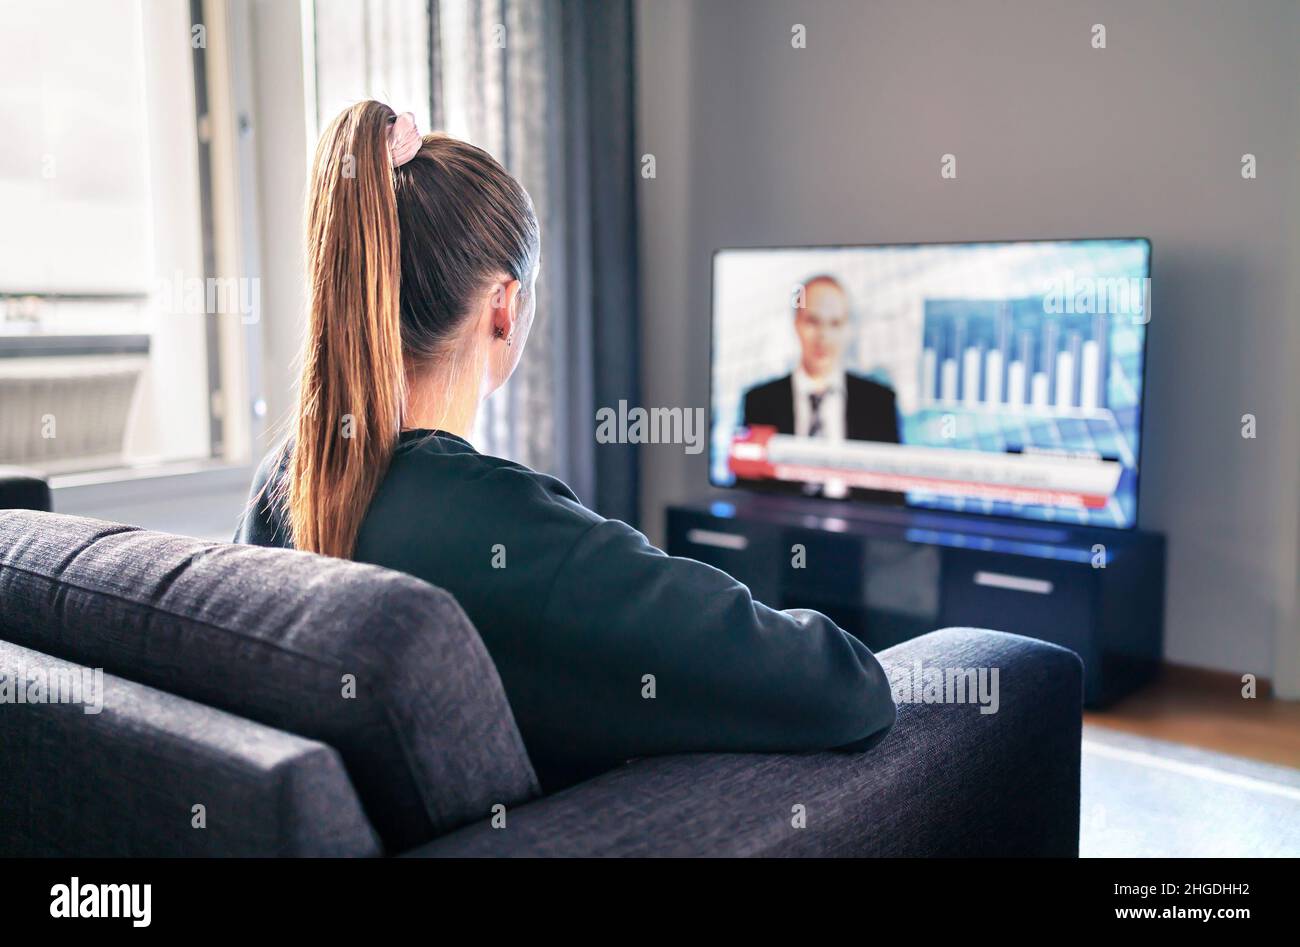 Notizie TV. Donna che guarda la televisione in casa. Reporter, Anchor e studio host in schermo con titoli newscast. Persona seduta. Foto Stock